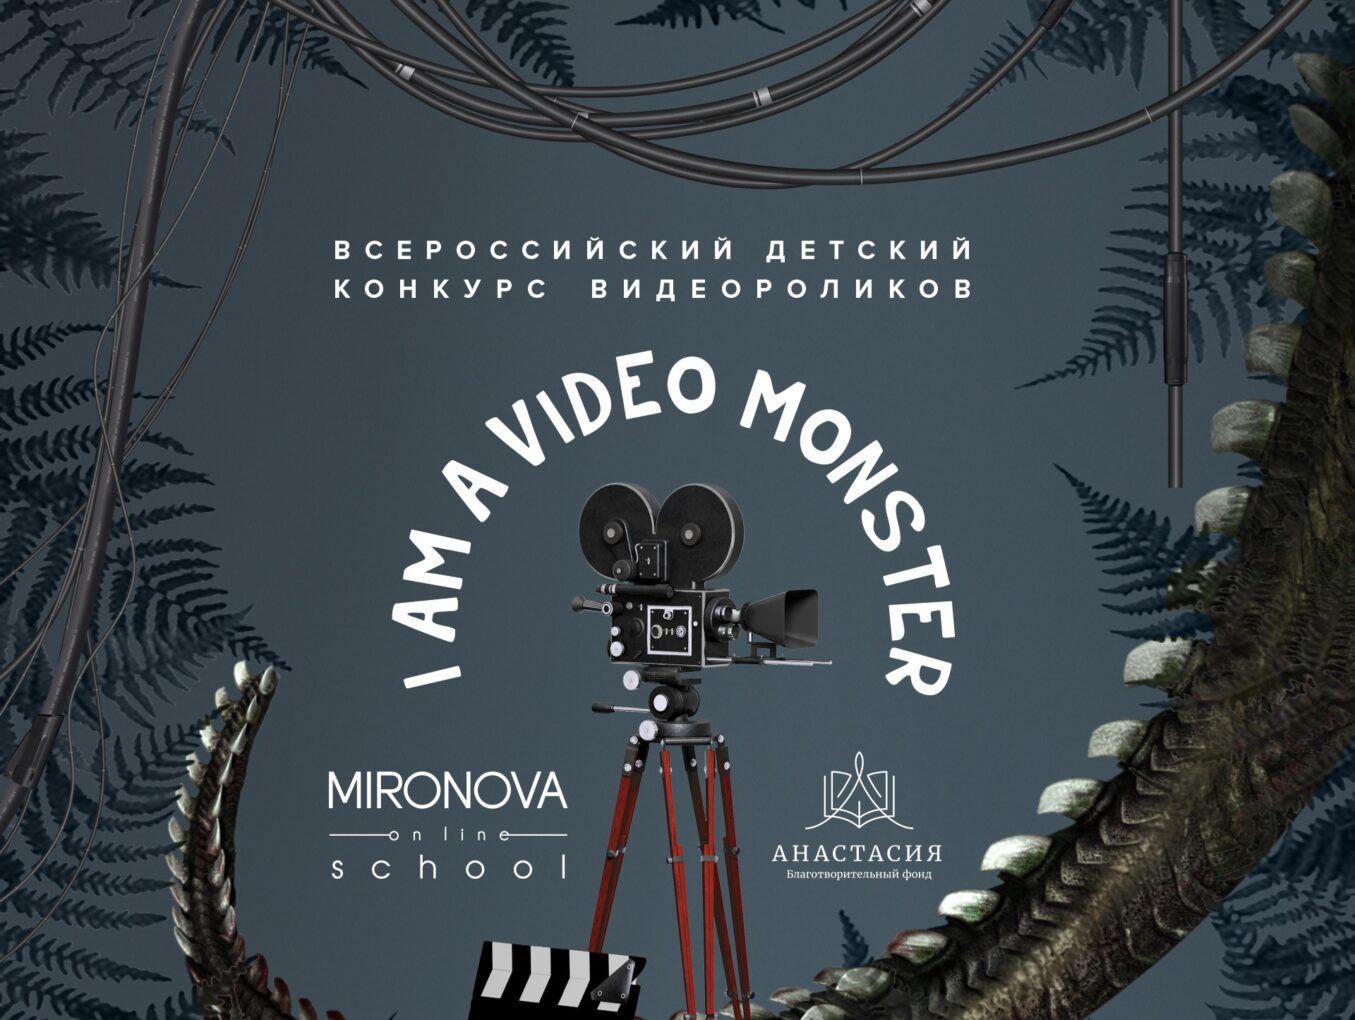 Благотворительный Фонд «Анастасия» приглашает к участию в Конкурсе видеороликов